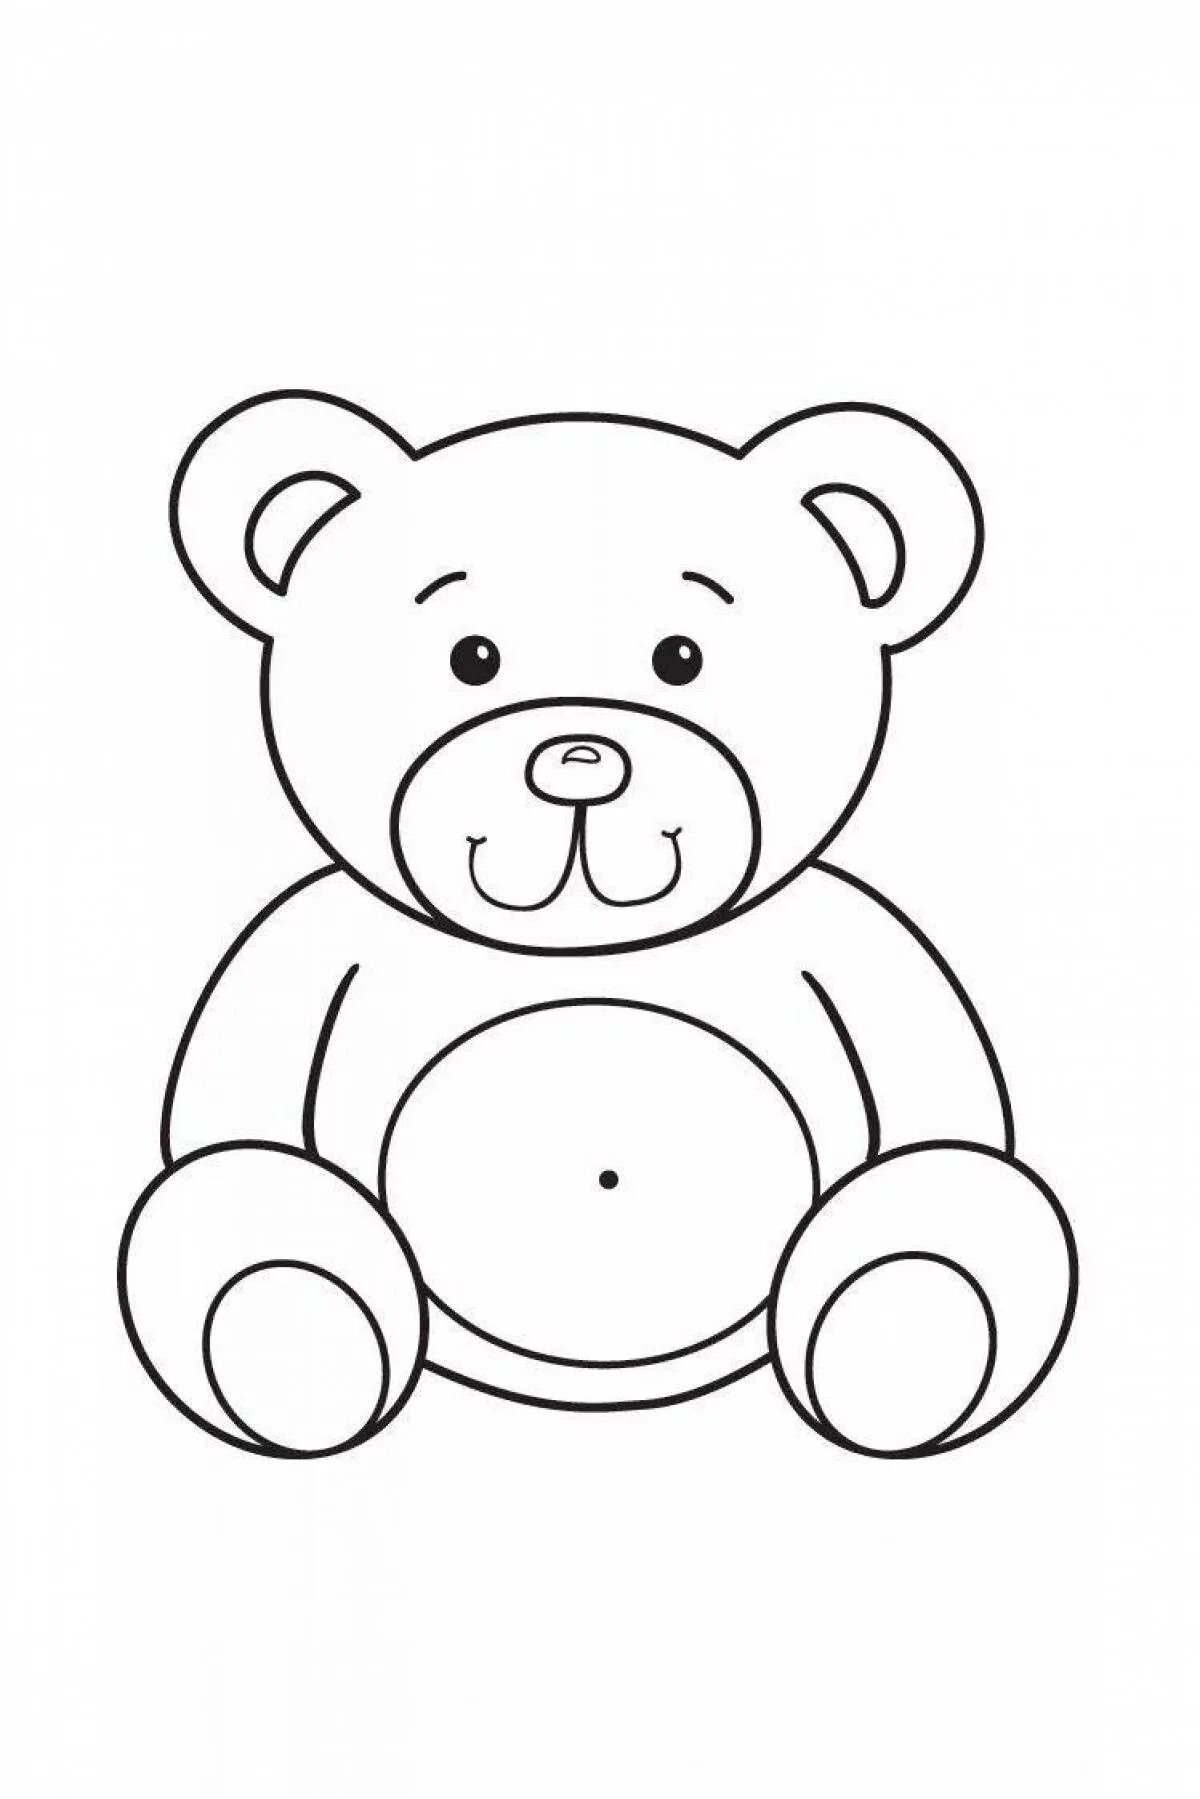 Раскраски детские игрушки. Медведь раскраска для детей. Медвежонок раскраска для детей. Медвежонок картинка для детей раскраска. Раскраски для детей 3 года мишки